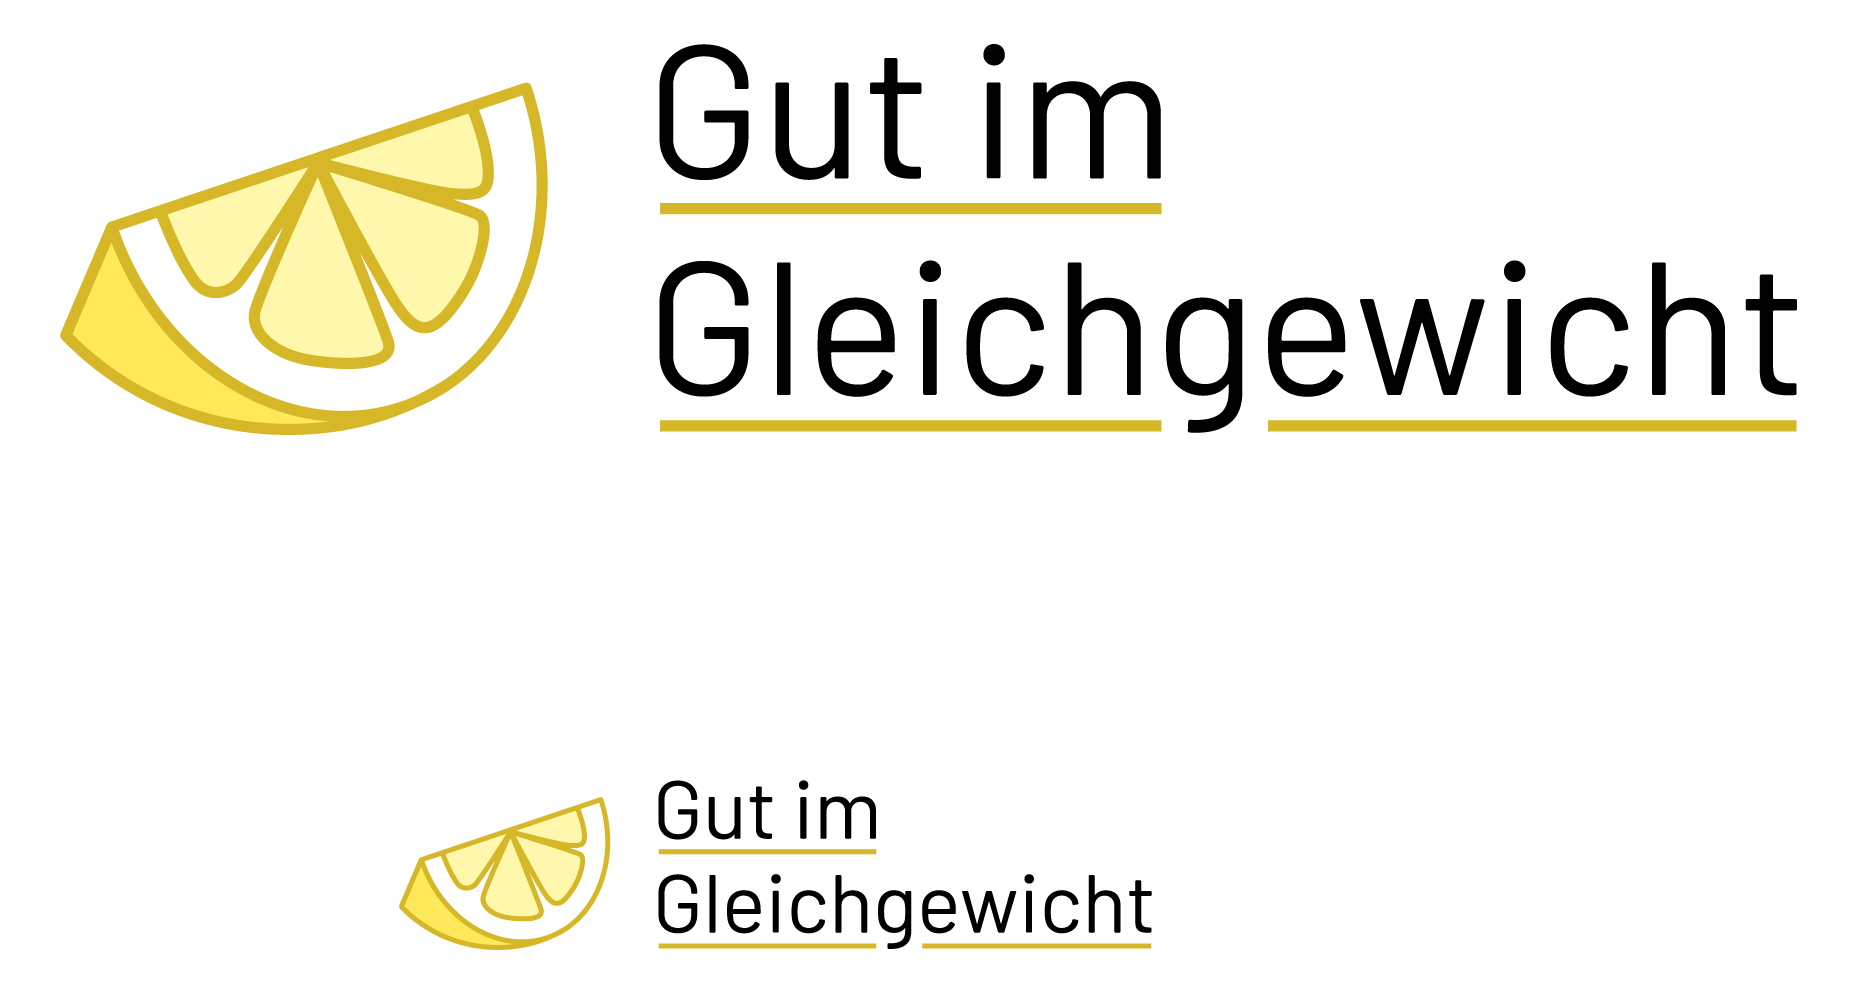 Darstellung des Logos von Gut-im-Gleichgewicht in groß sowie in klein, mit einer geviertelten Zitrone als Wortbildmarke.